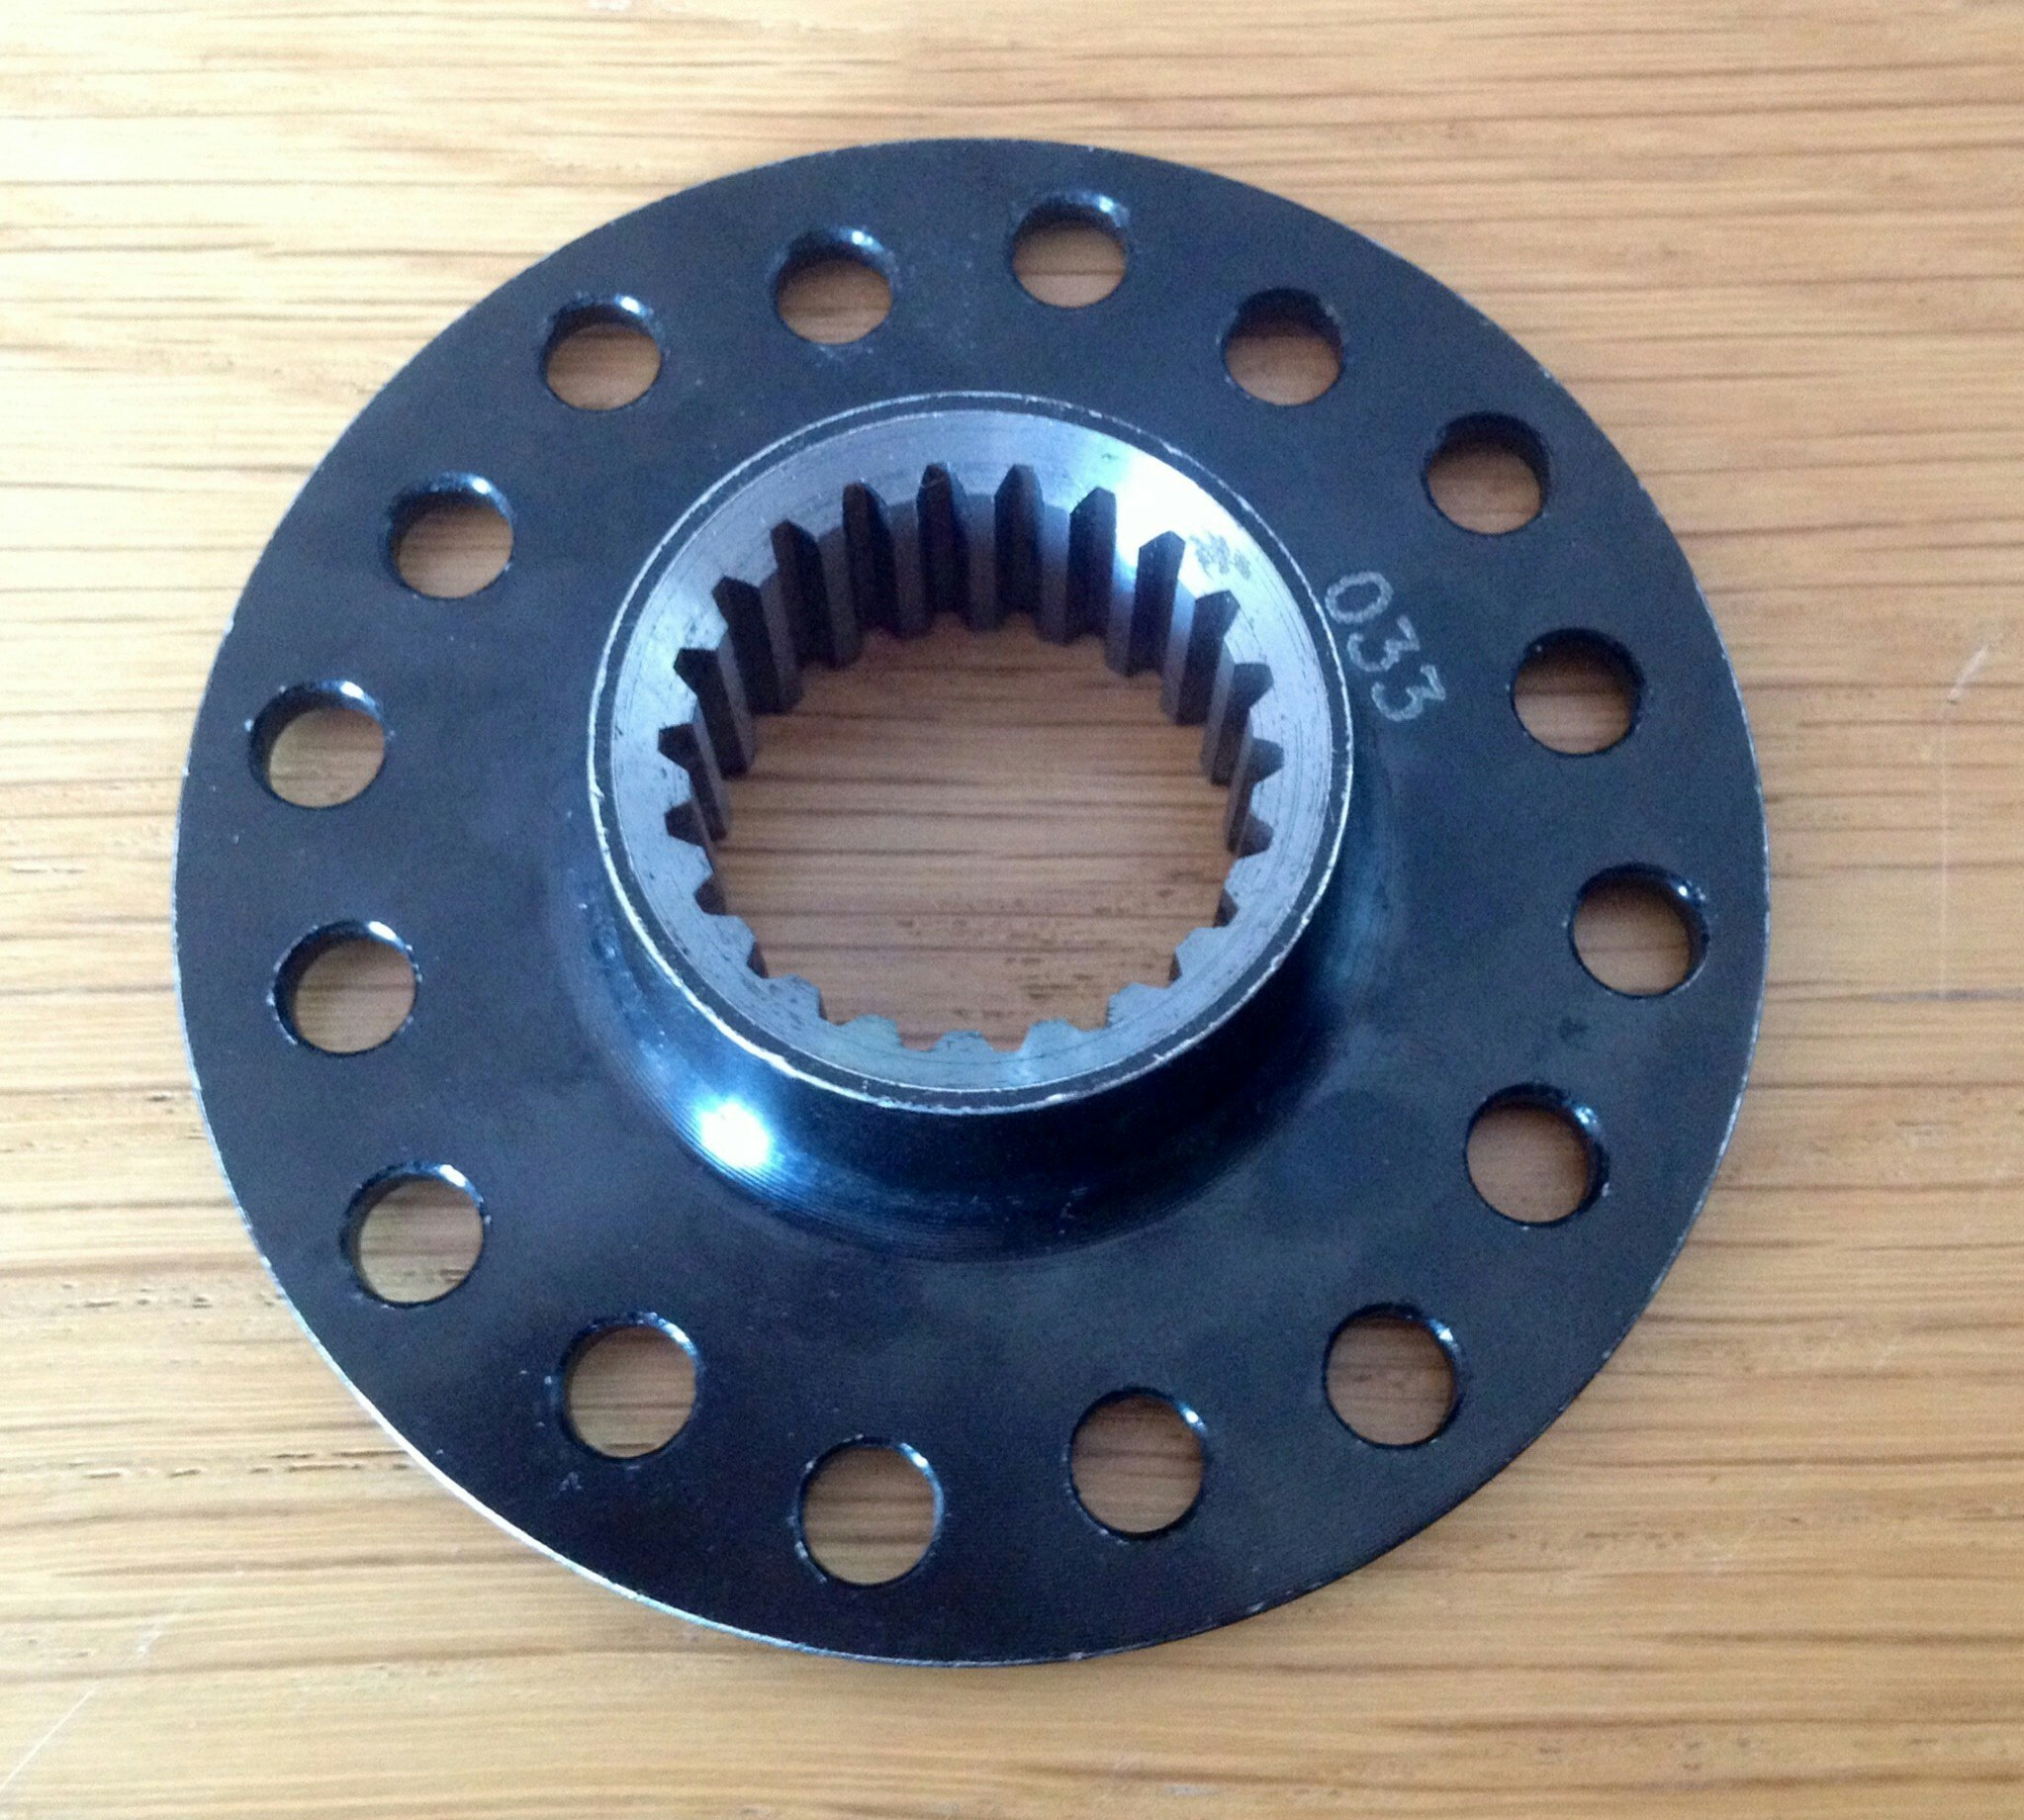 Tenaci disc hub - BMW 22 splines 35 mm